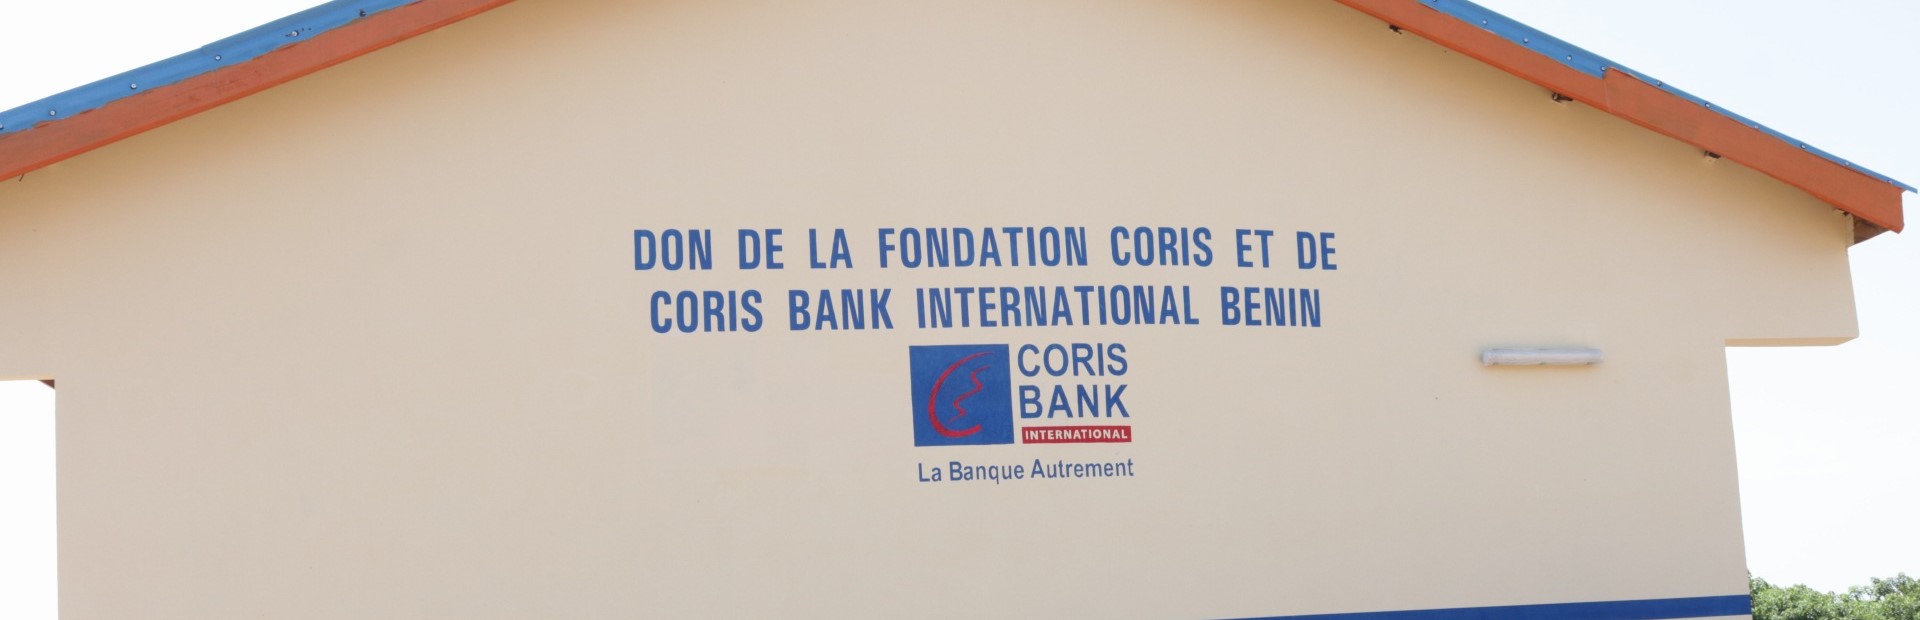 NIKKI/ÉDUCATION : CÉRÉMONIE DE REMISE D'UN MODULE DE SALLES DE CLASSE PAR CORIS BANK INTERNATIONAL BENIN AU CEG SUYA